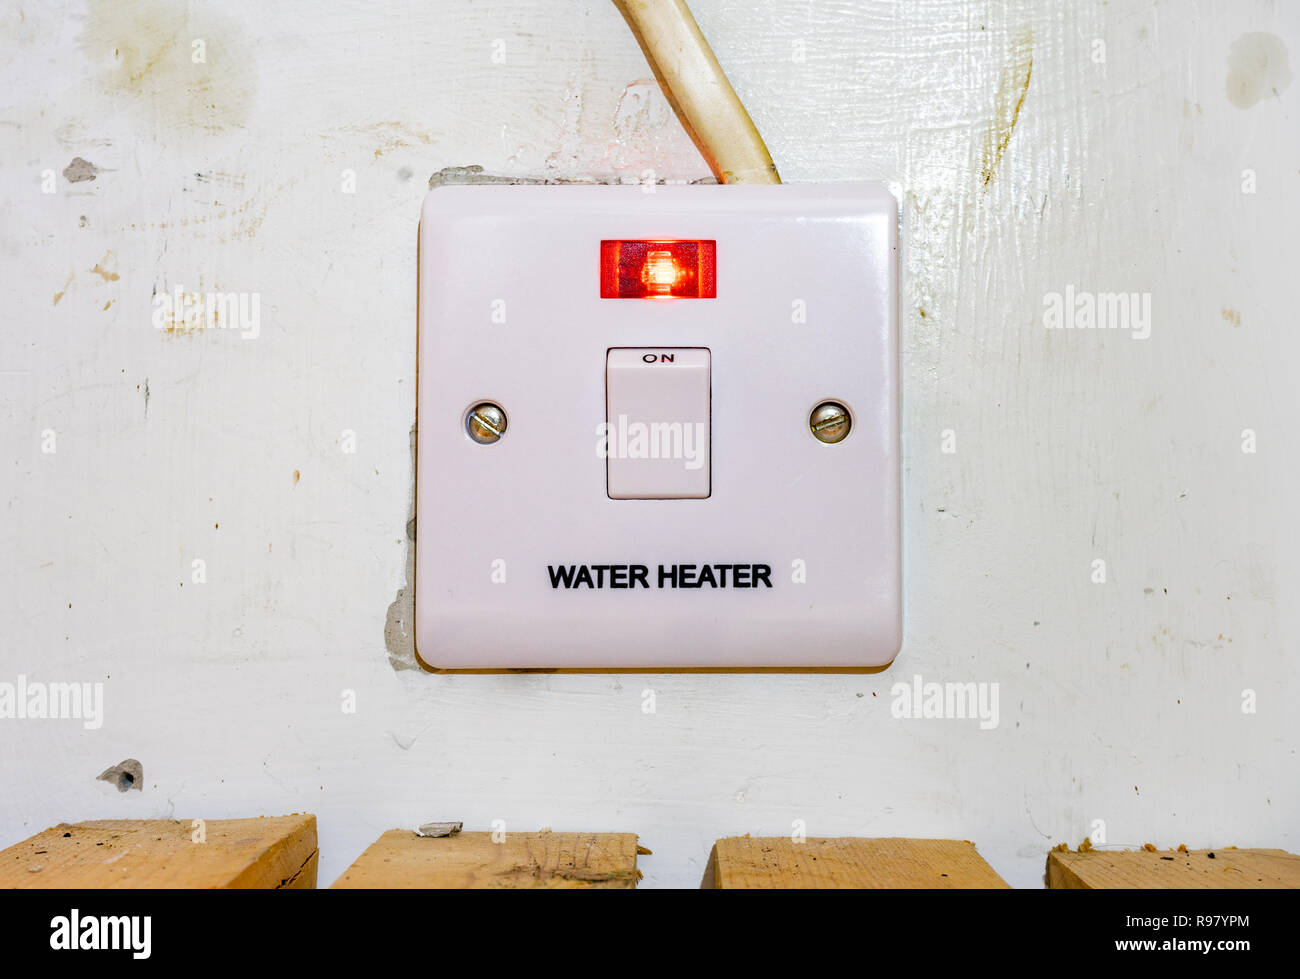 UK-Wasservorwärmer-Schalter mit roter Leuchte leuchtet, um anzuzeigen, dass er verwendet wird Stockfoto